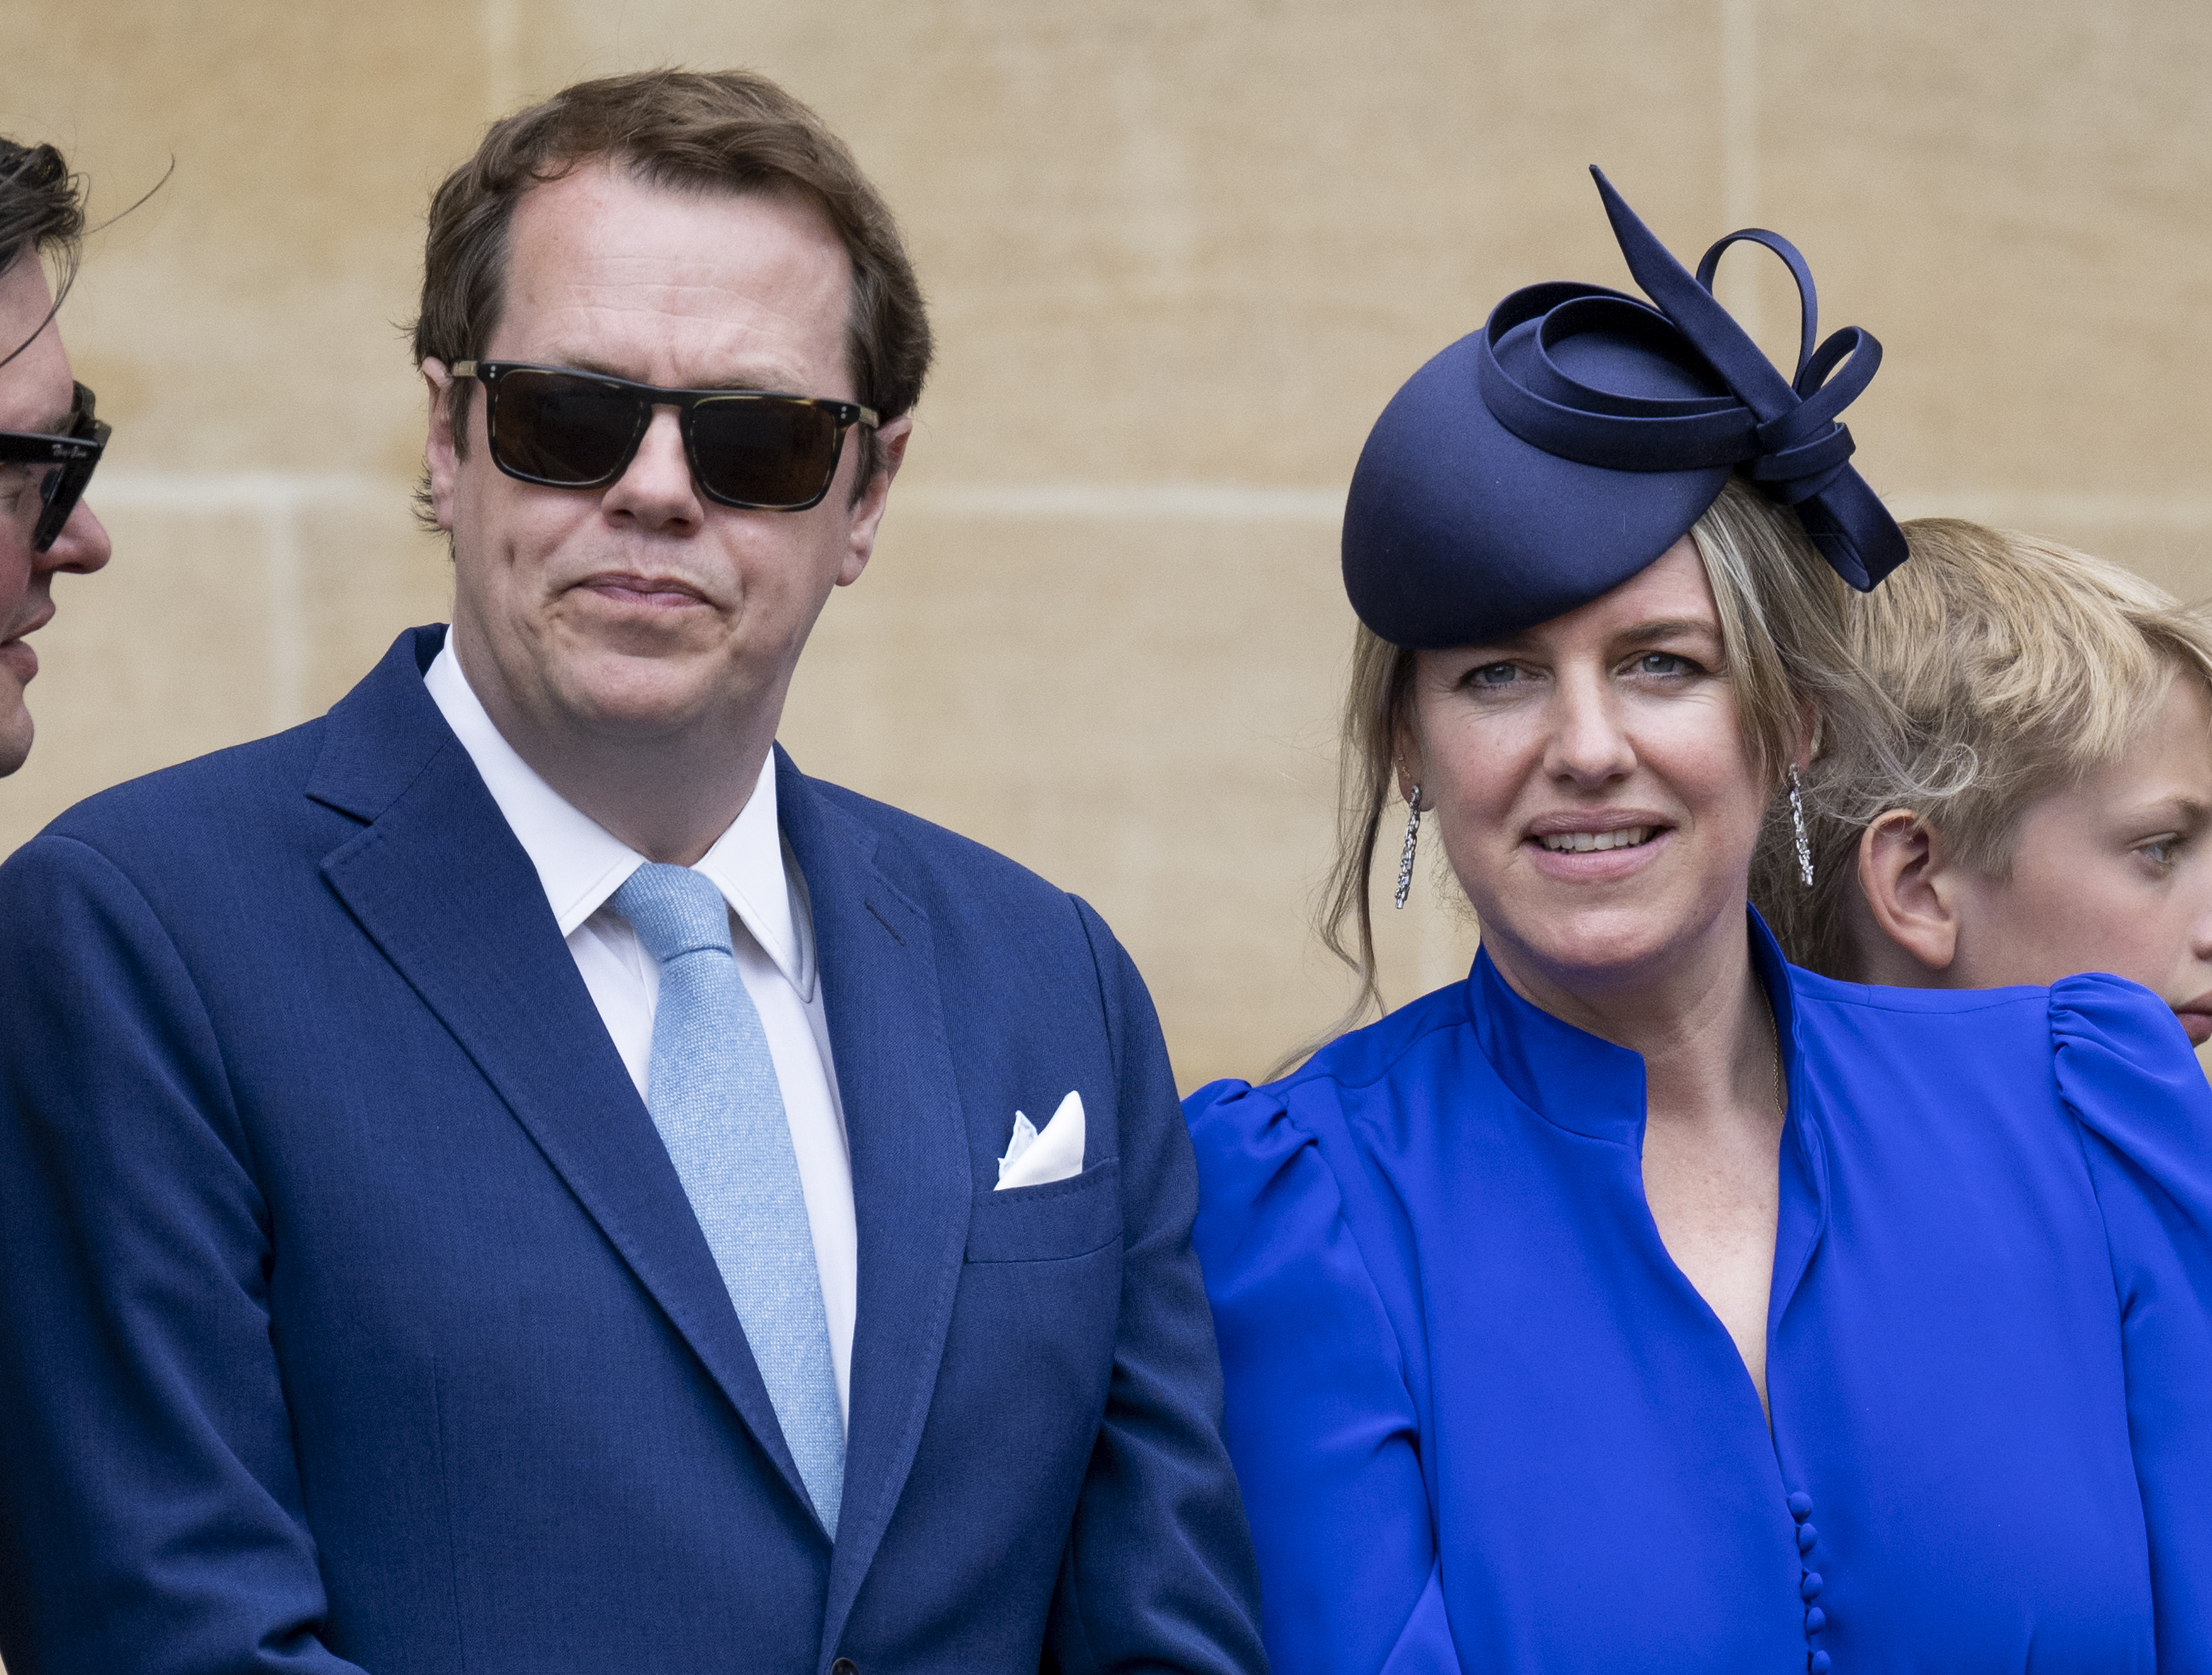 Tom Parker Bowles y Laura Lopes en el servicio de la Orden de la Jarretera en Windsor, Inglaterra, el 13 de junio de 2022. | Fuente: Getty Images